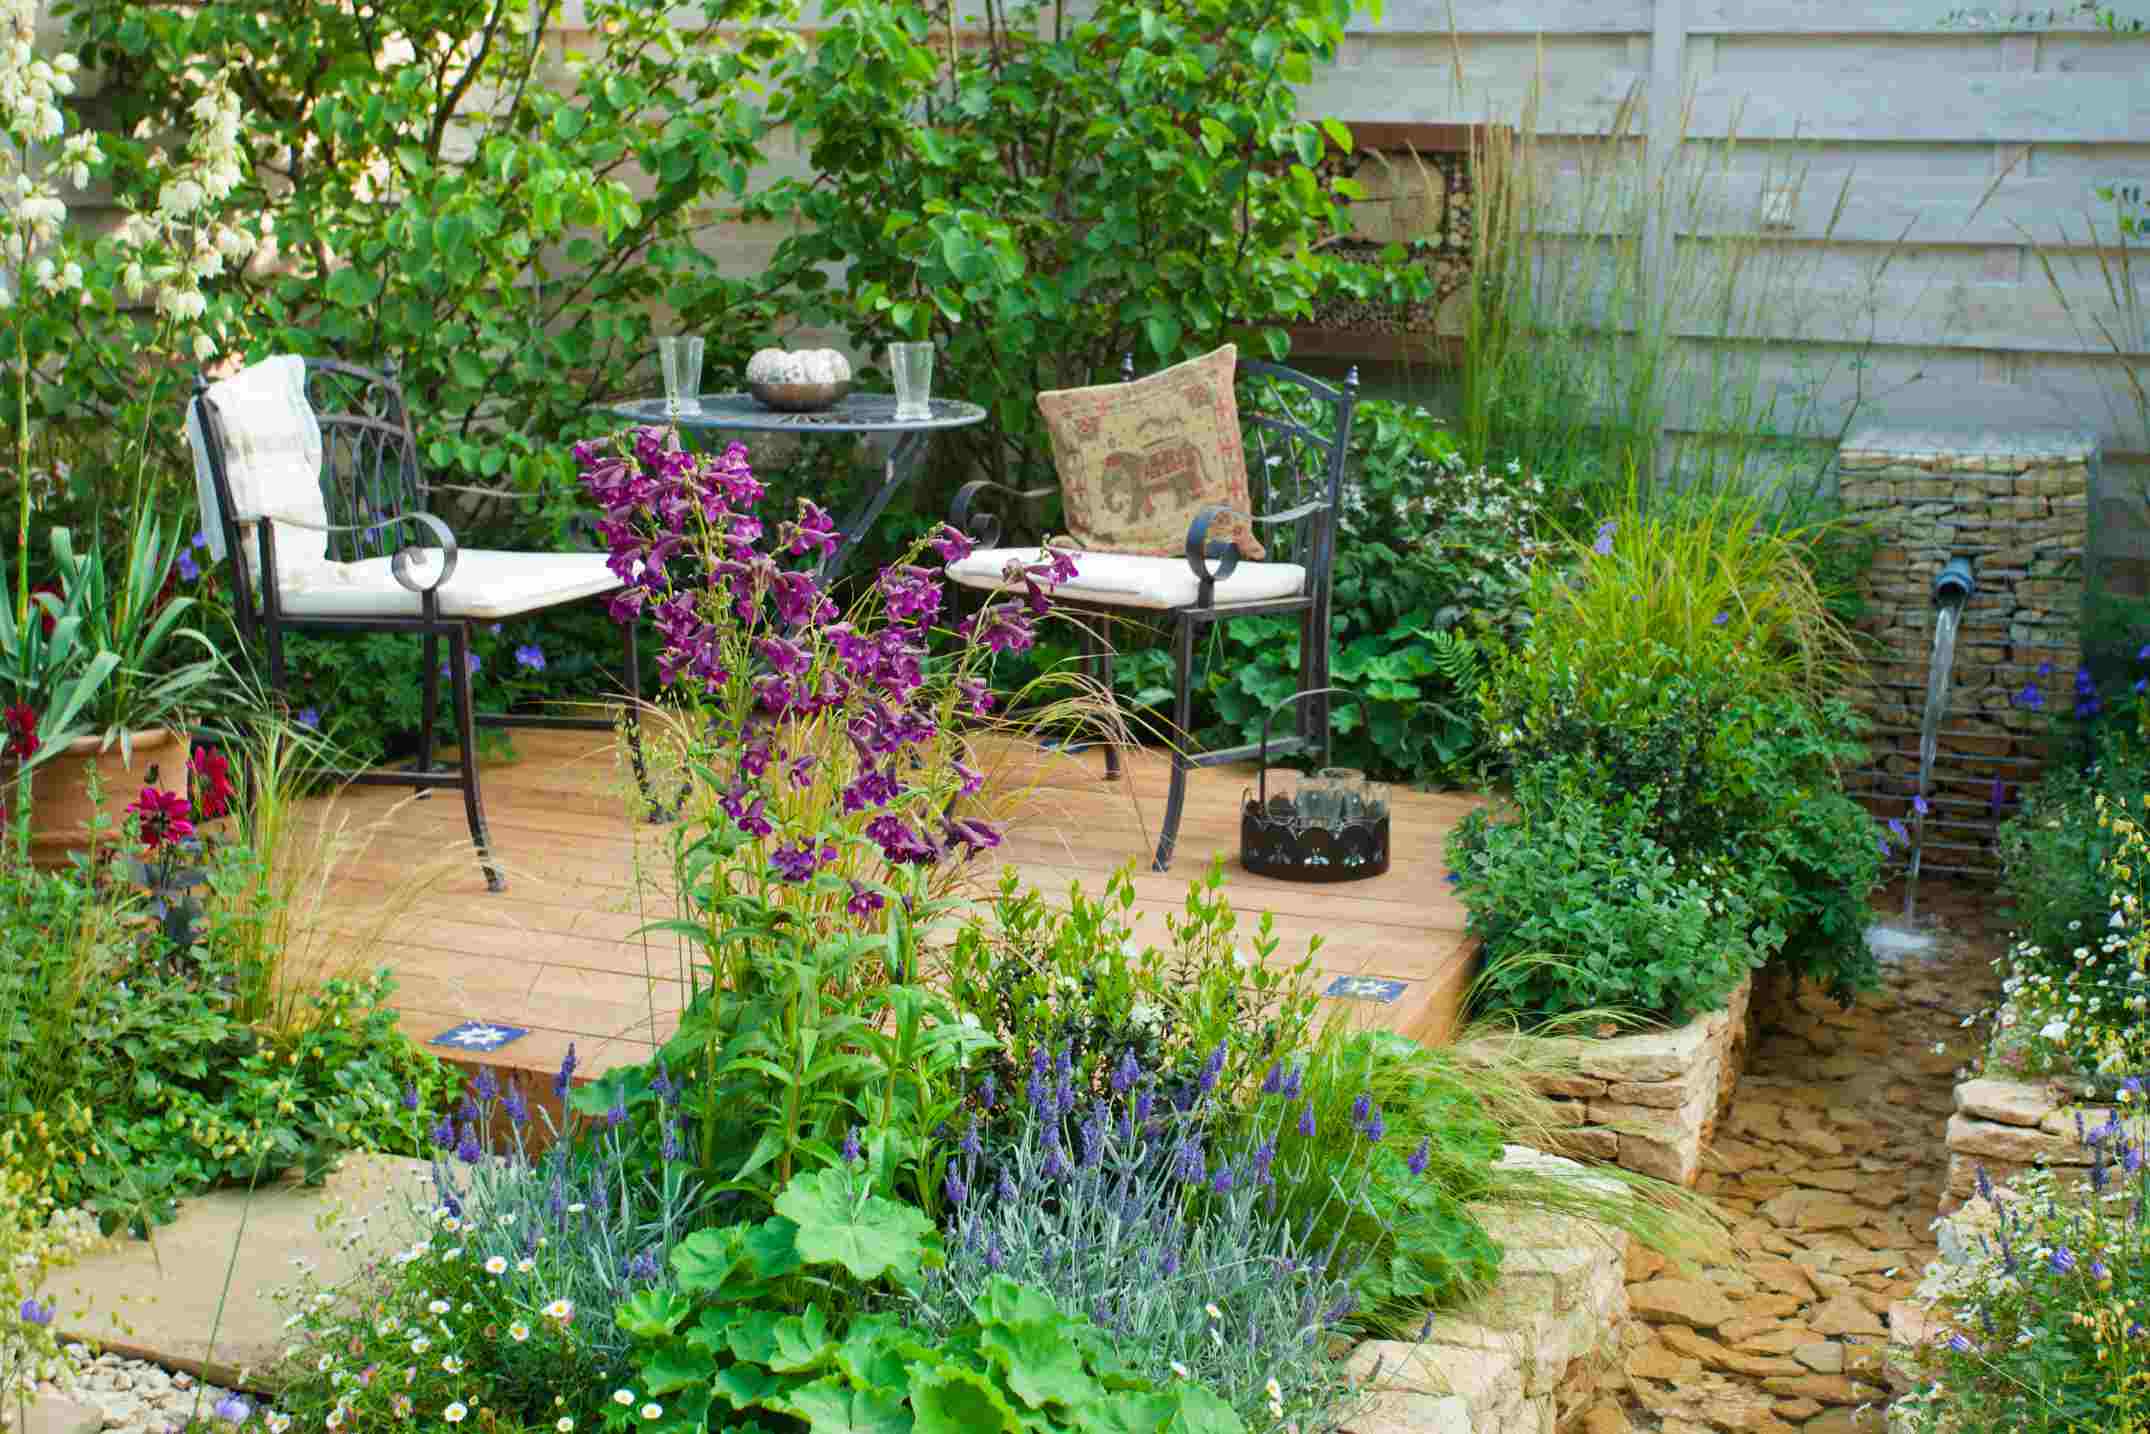 Espace détente dans une cour ou un jardin avec design tendance industriel